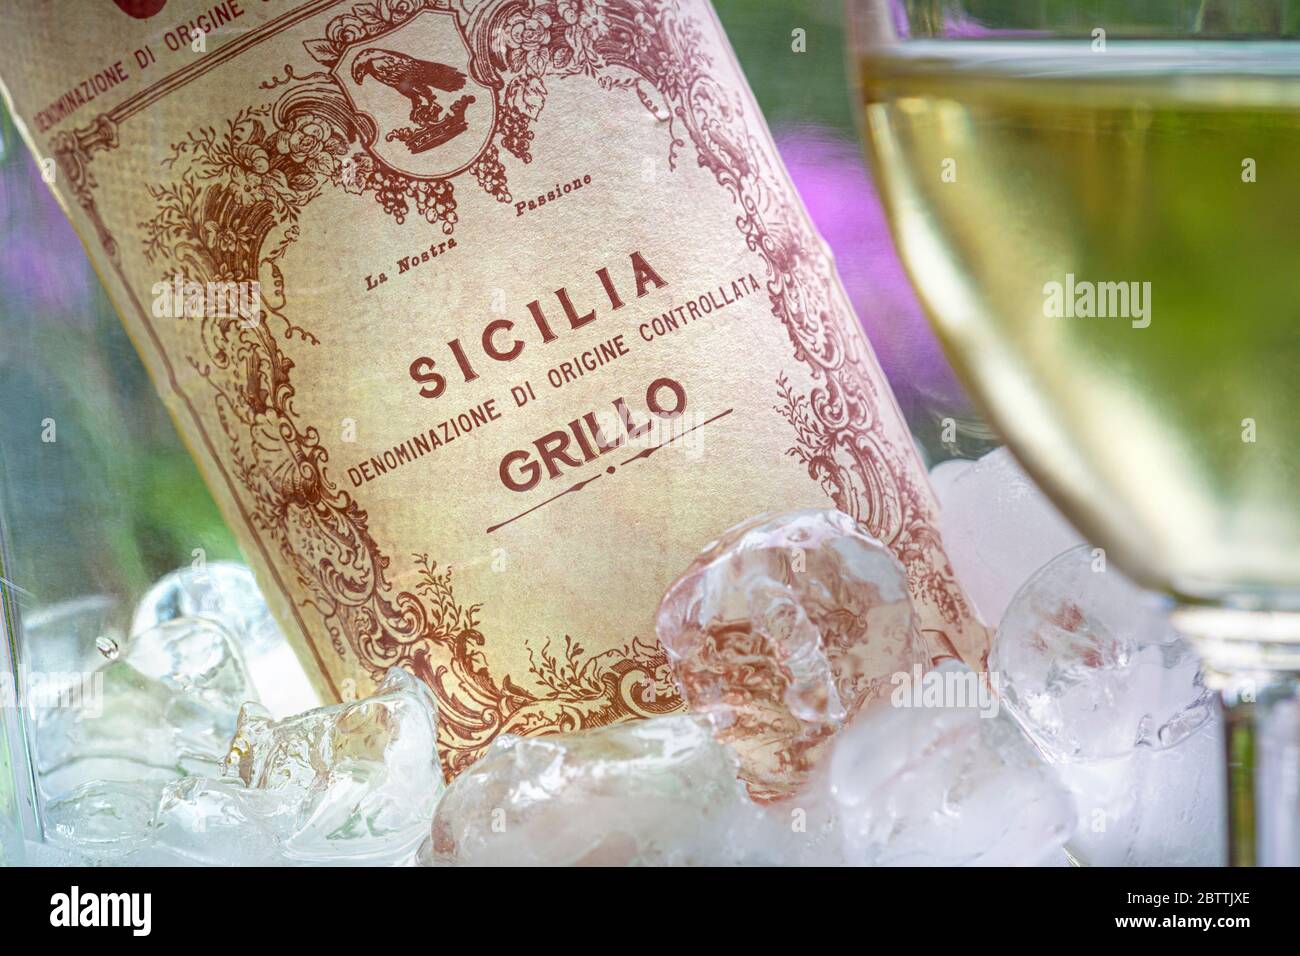 GRILLO SIZILIEN WEINGLAS Flasche sizilianischen DOC Grillo Weißwein im Weinkühler mit Eis & gegossenes Glas im Vordergrund Alfresco floralen Garten Terrasse Lage Italien Stockfoto